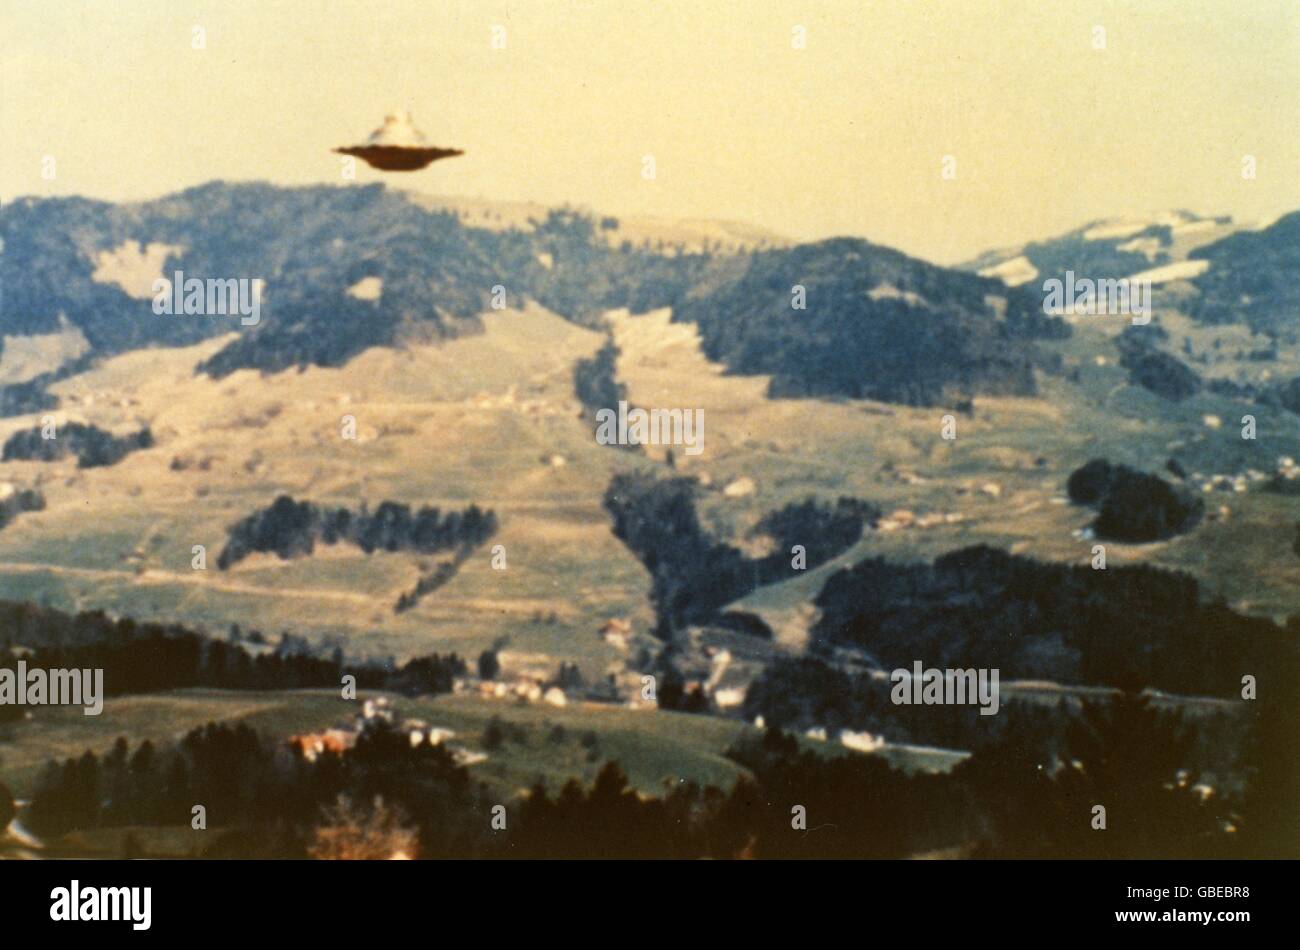 Raumfahrt, nicht identifiziertes Flugobjekt (UFO), Ufos, Schauflug des Semiasensiffes, Bachtelhörnli-Unterbachtel, Schweiz, 8.3.1976, Zusatz-Rechte-Clearences-nicht vorhanden Stockfoto